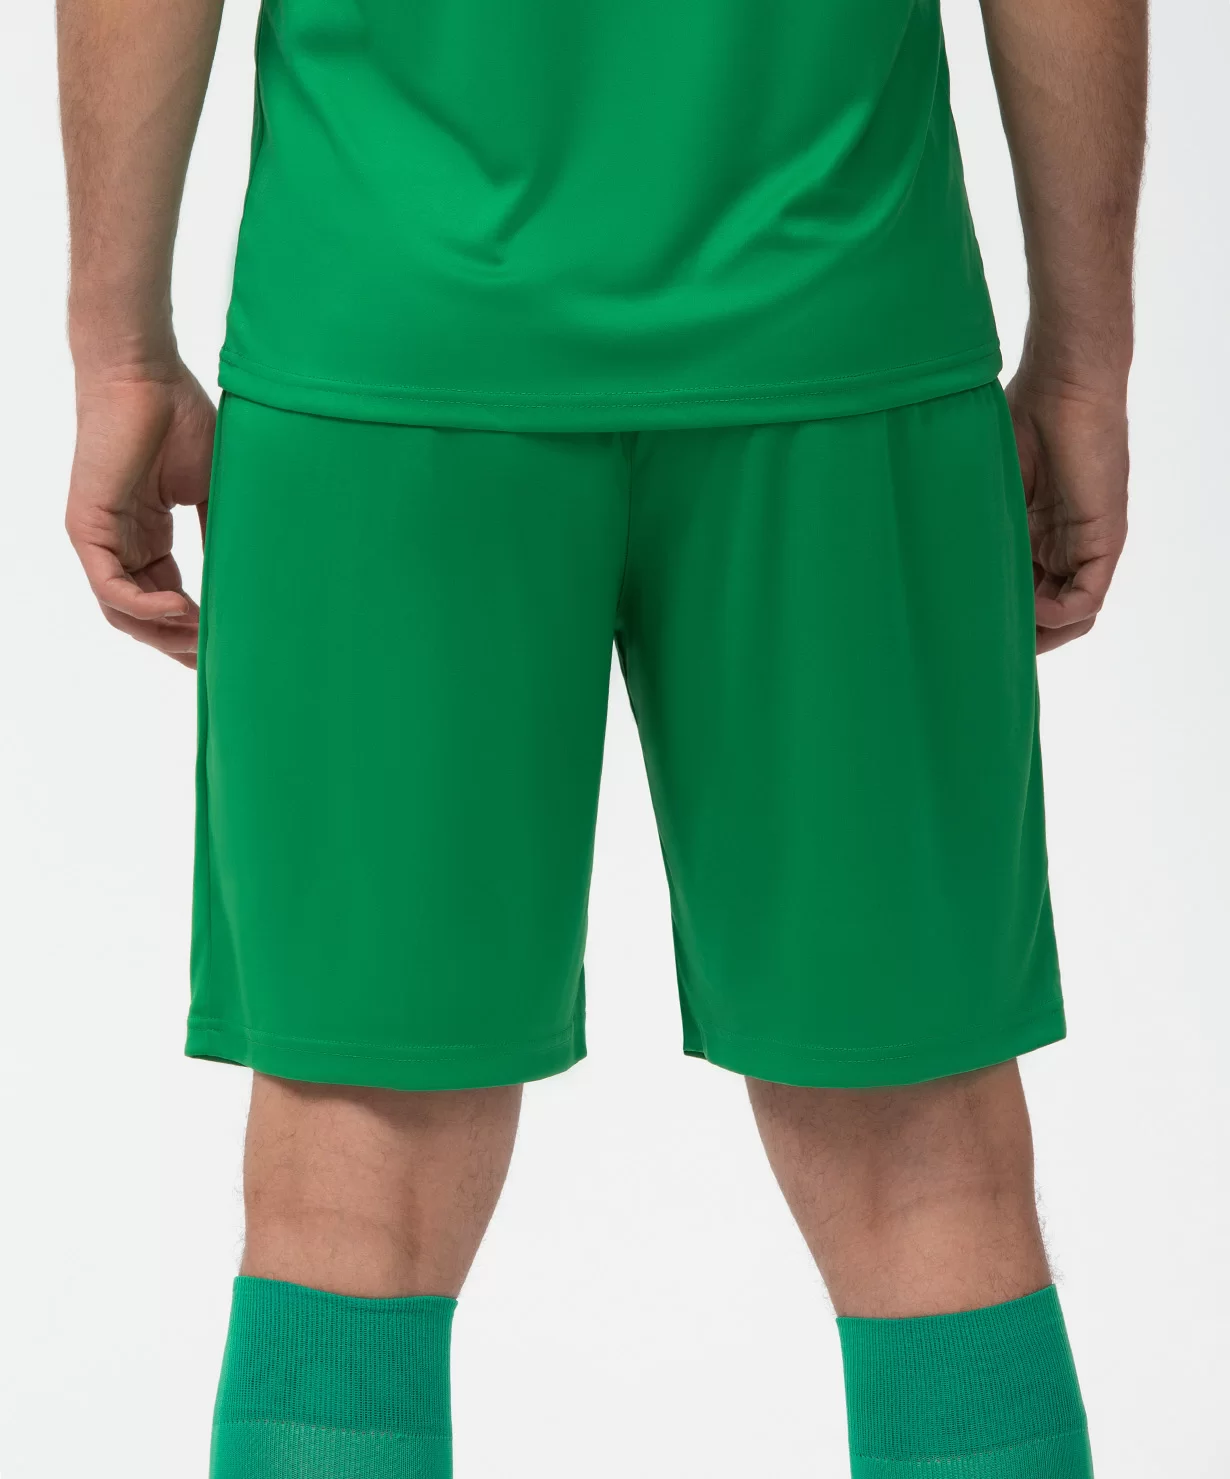 Реальное фото Шорты игровые CAMP Classic Shorts, зеленый/белый Jögel от магазина Спортев